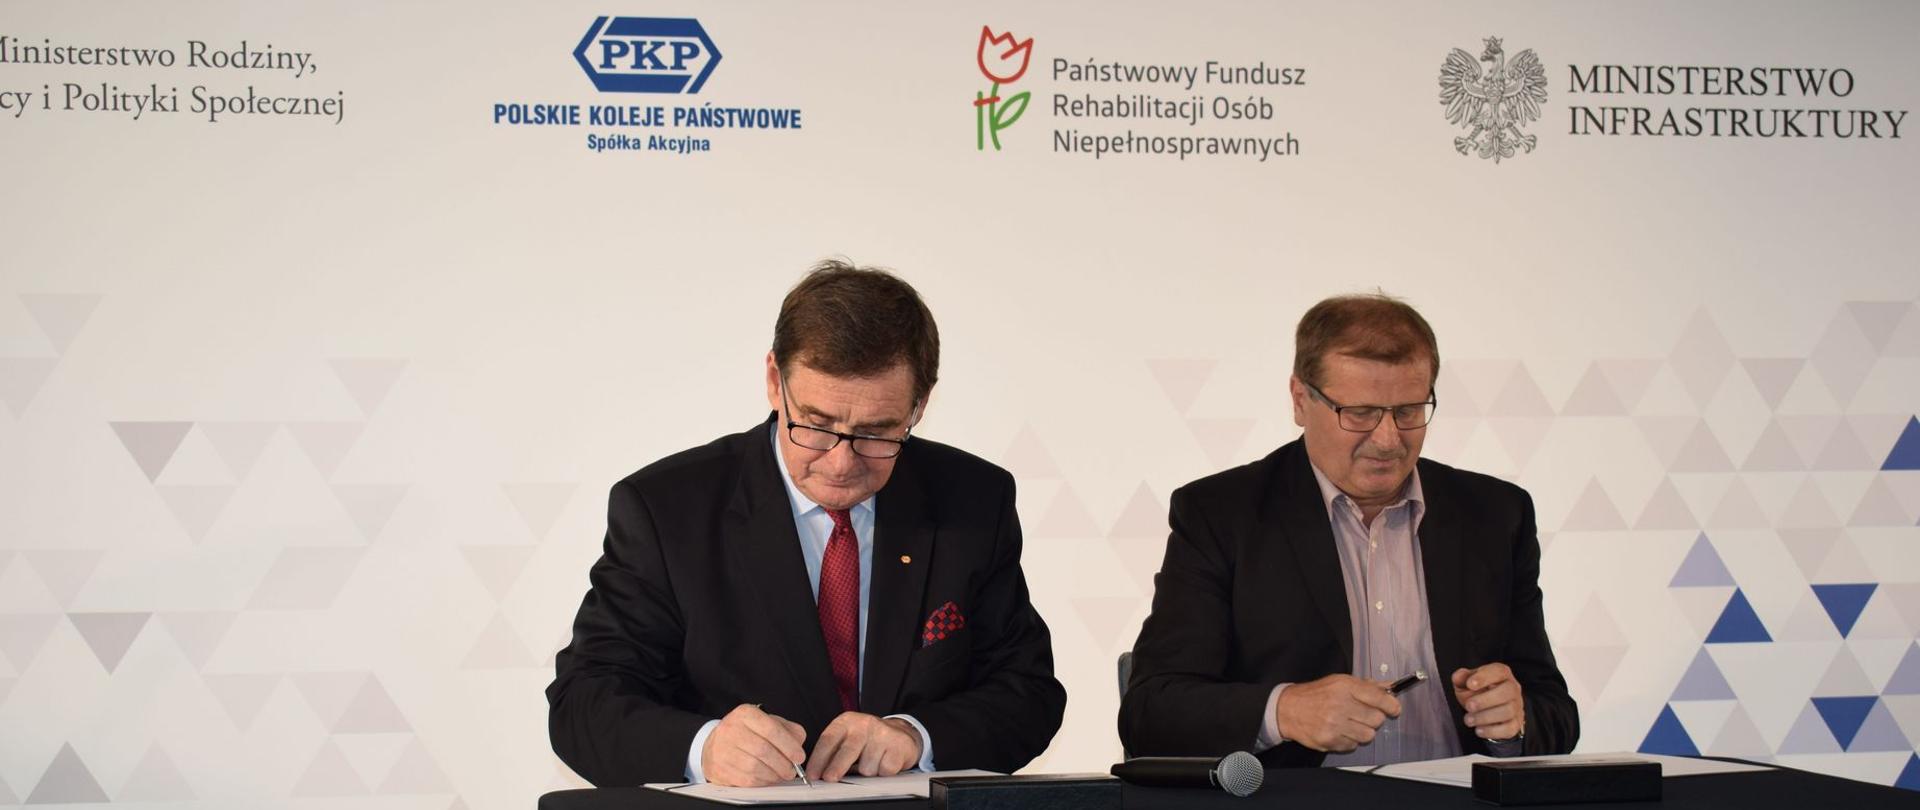 Prezes PKP SA Krzysztof Mamiński i zastępca prezesa Zarządu PFRON ds. finansowych Tomasz Maruszewski podpisują porozumienie